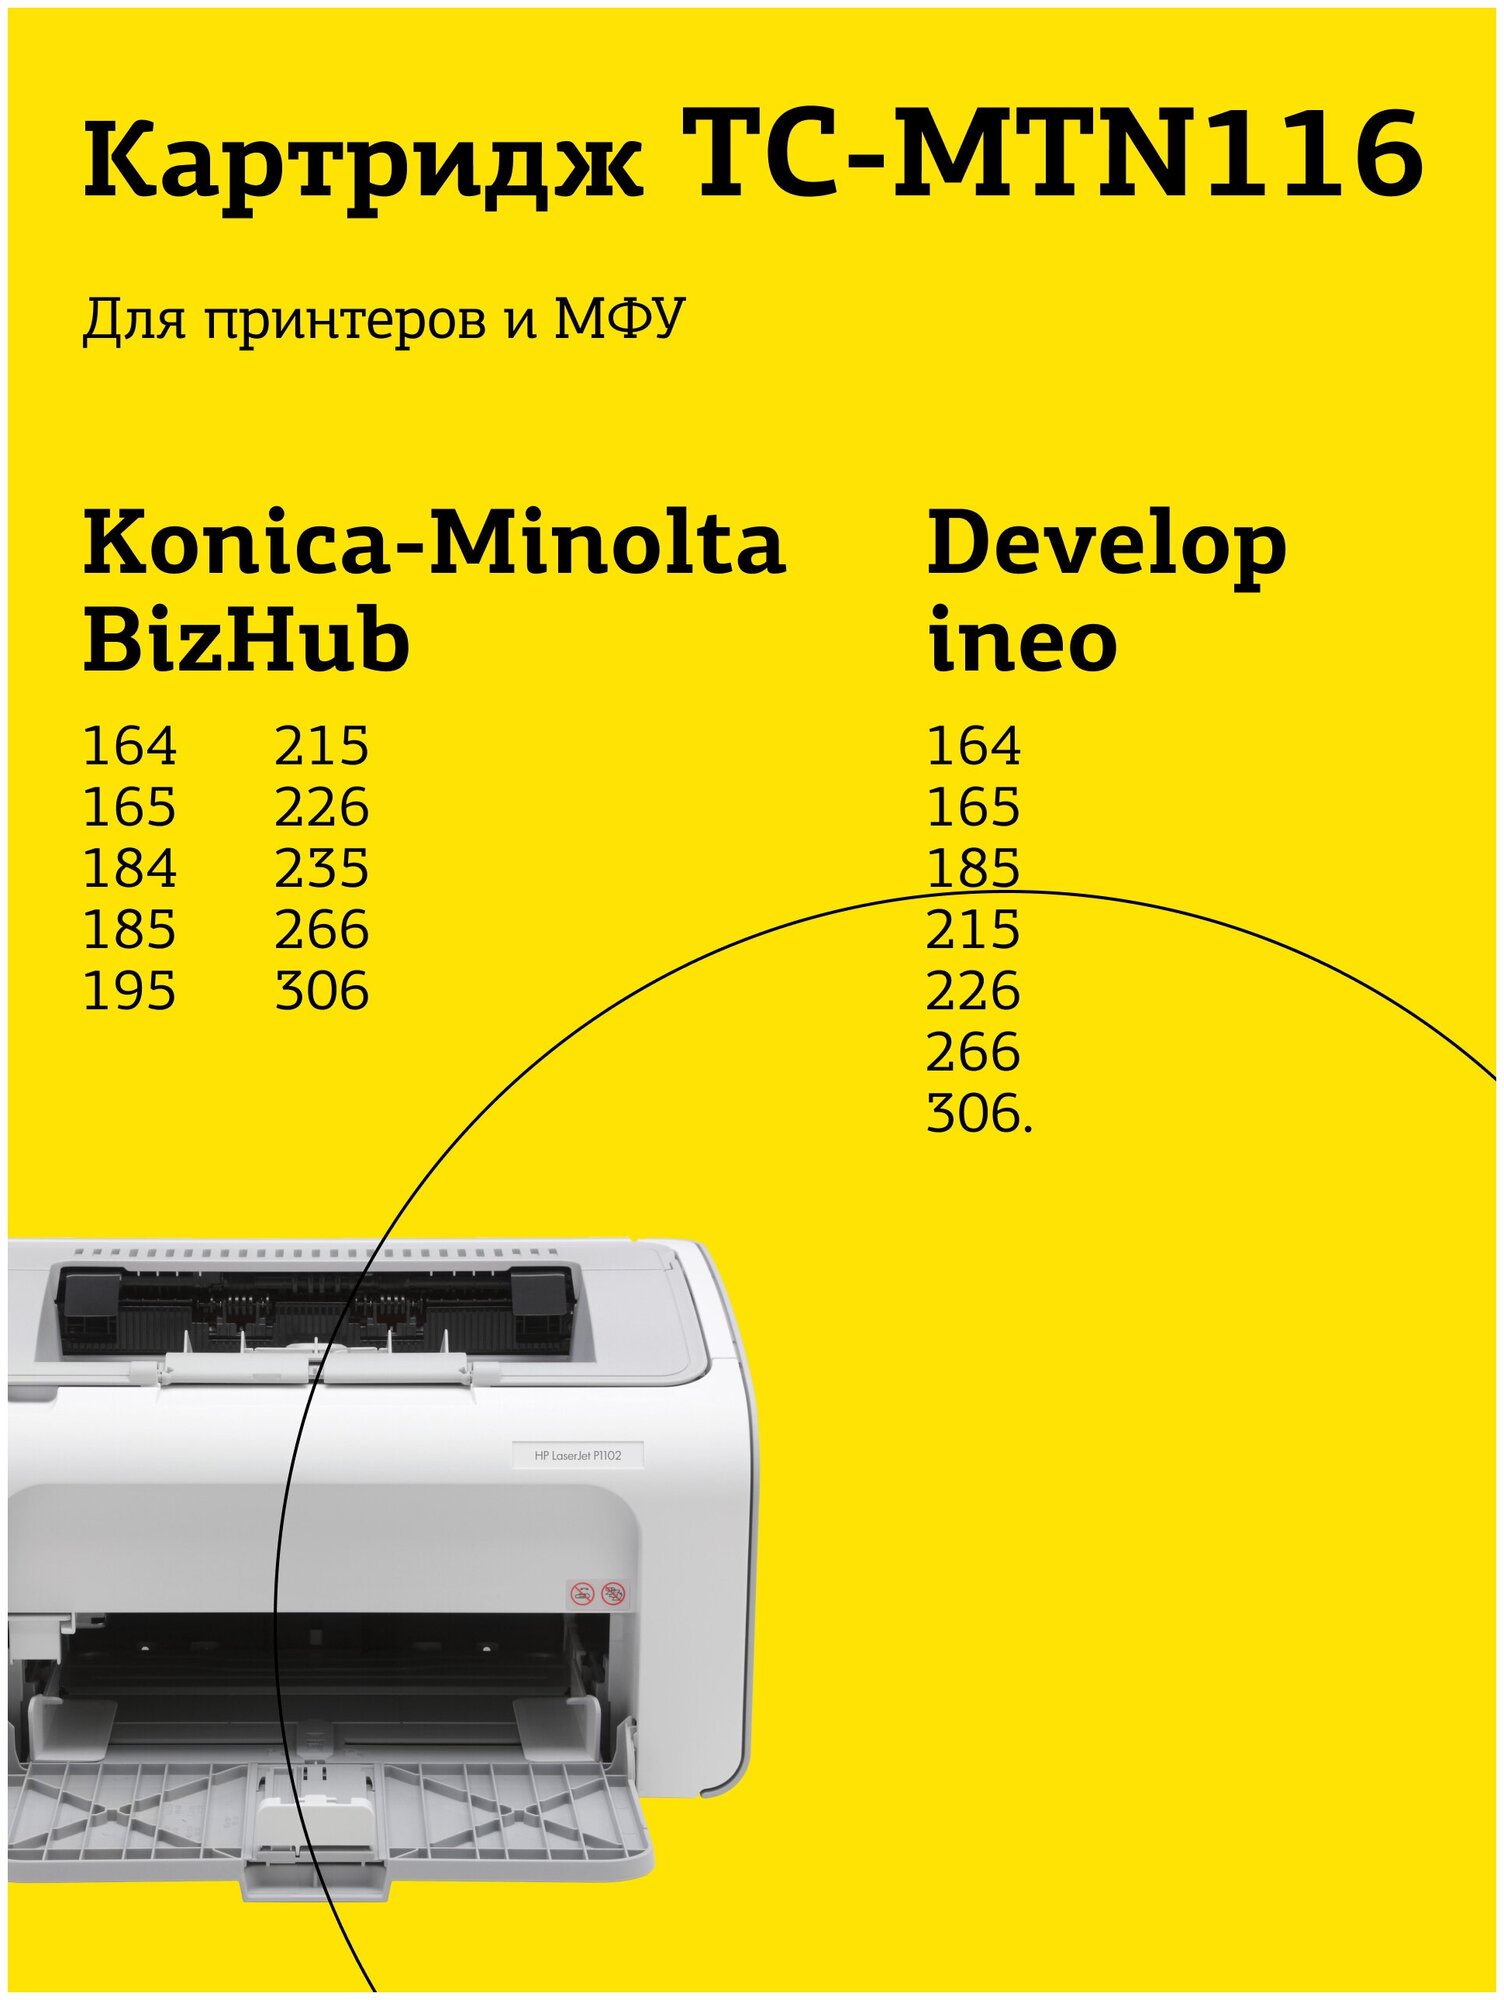 Картридж T2 TN-116 черный совместимый с принтером Konica Minolta (TC-MTN116)